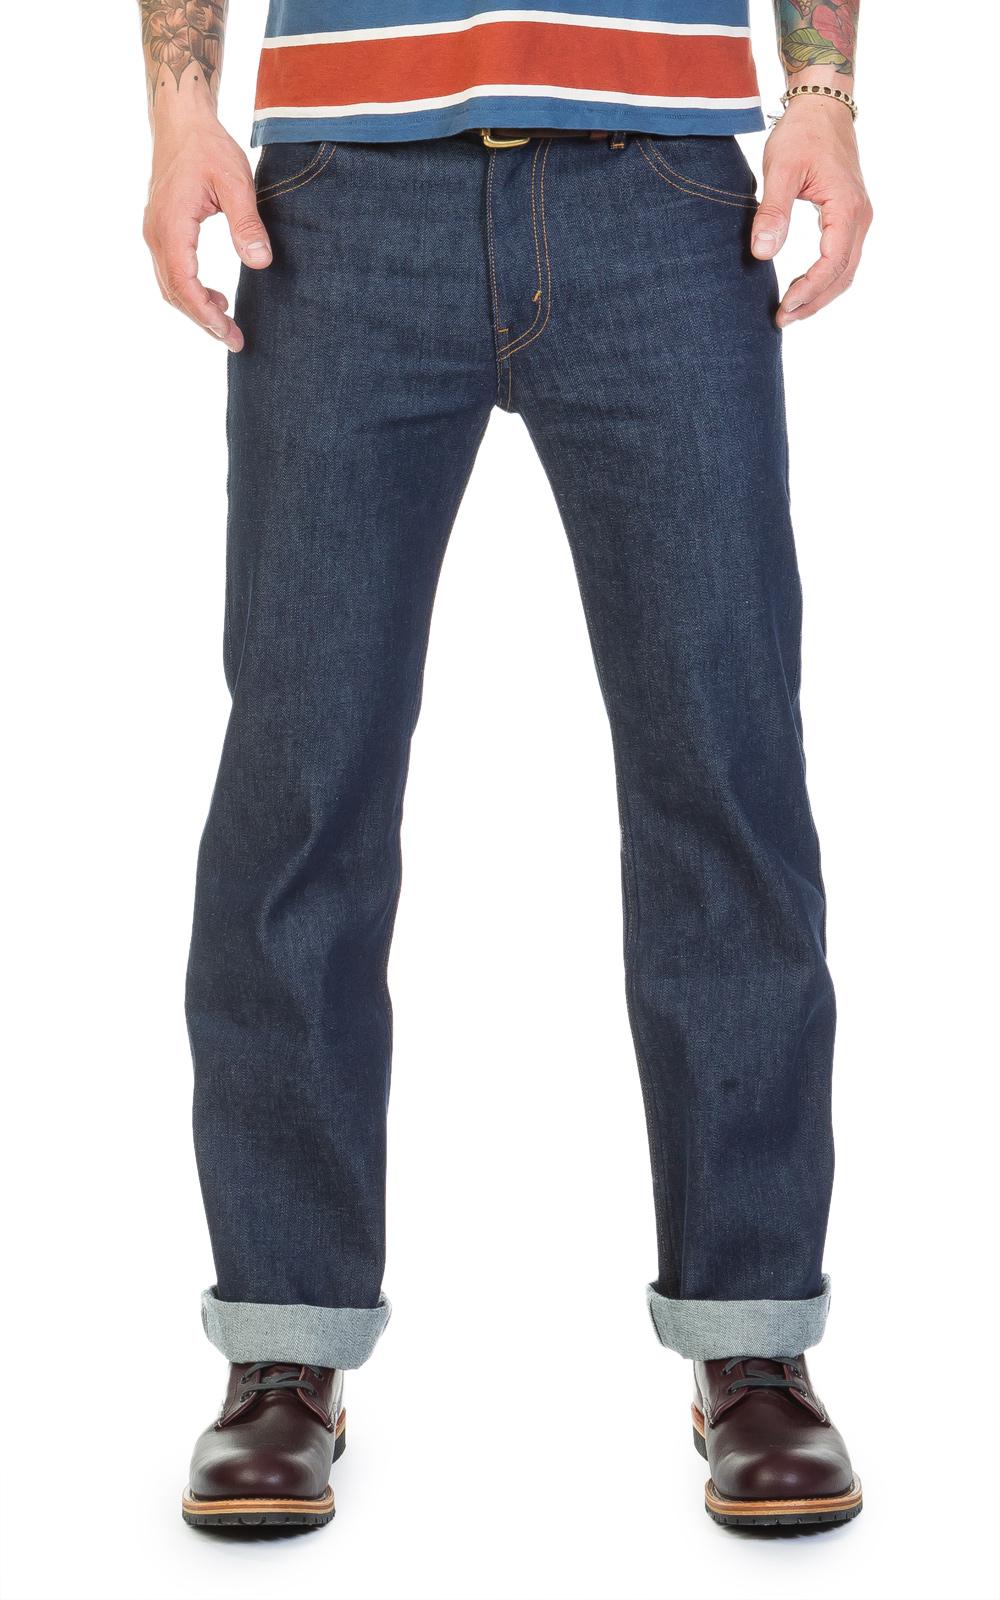 levis 645 jeans